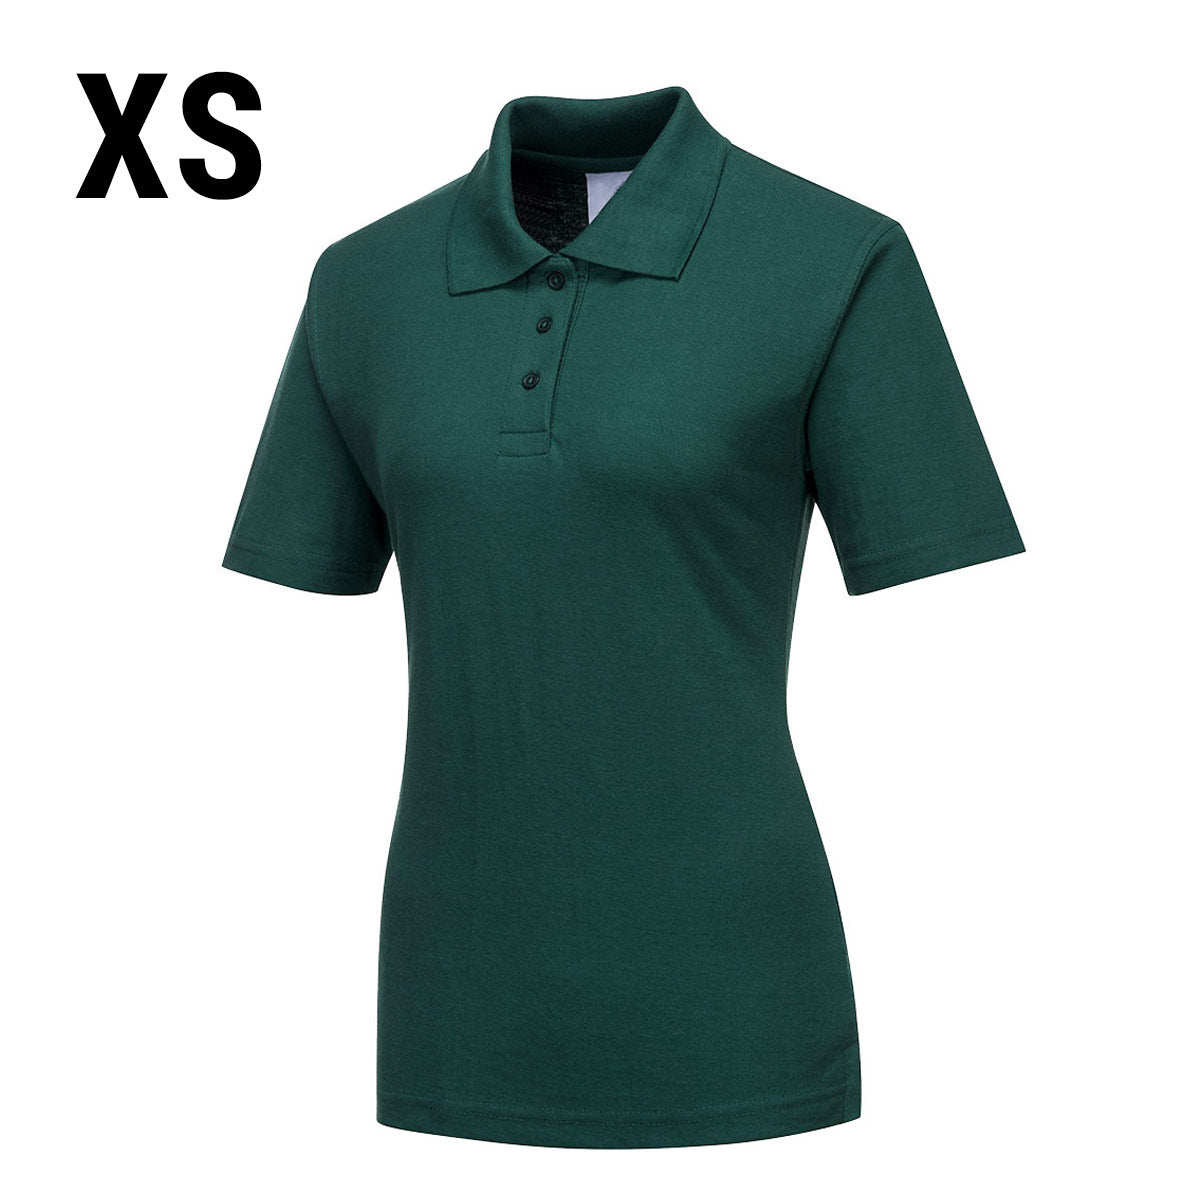 Poloskjorte til damer - Flaske grønn - størrelse: XS